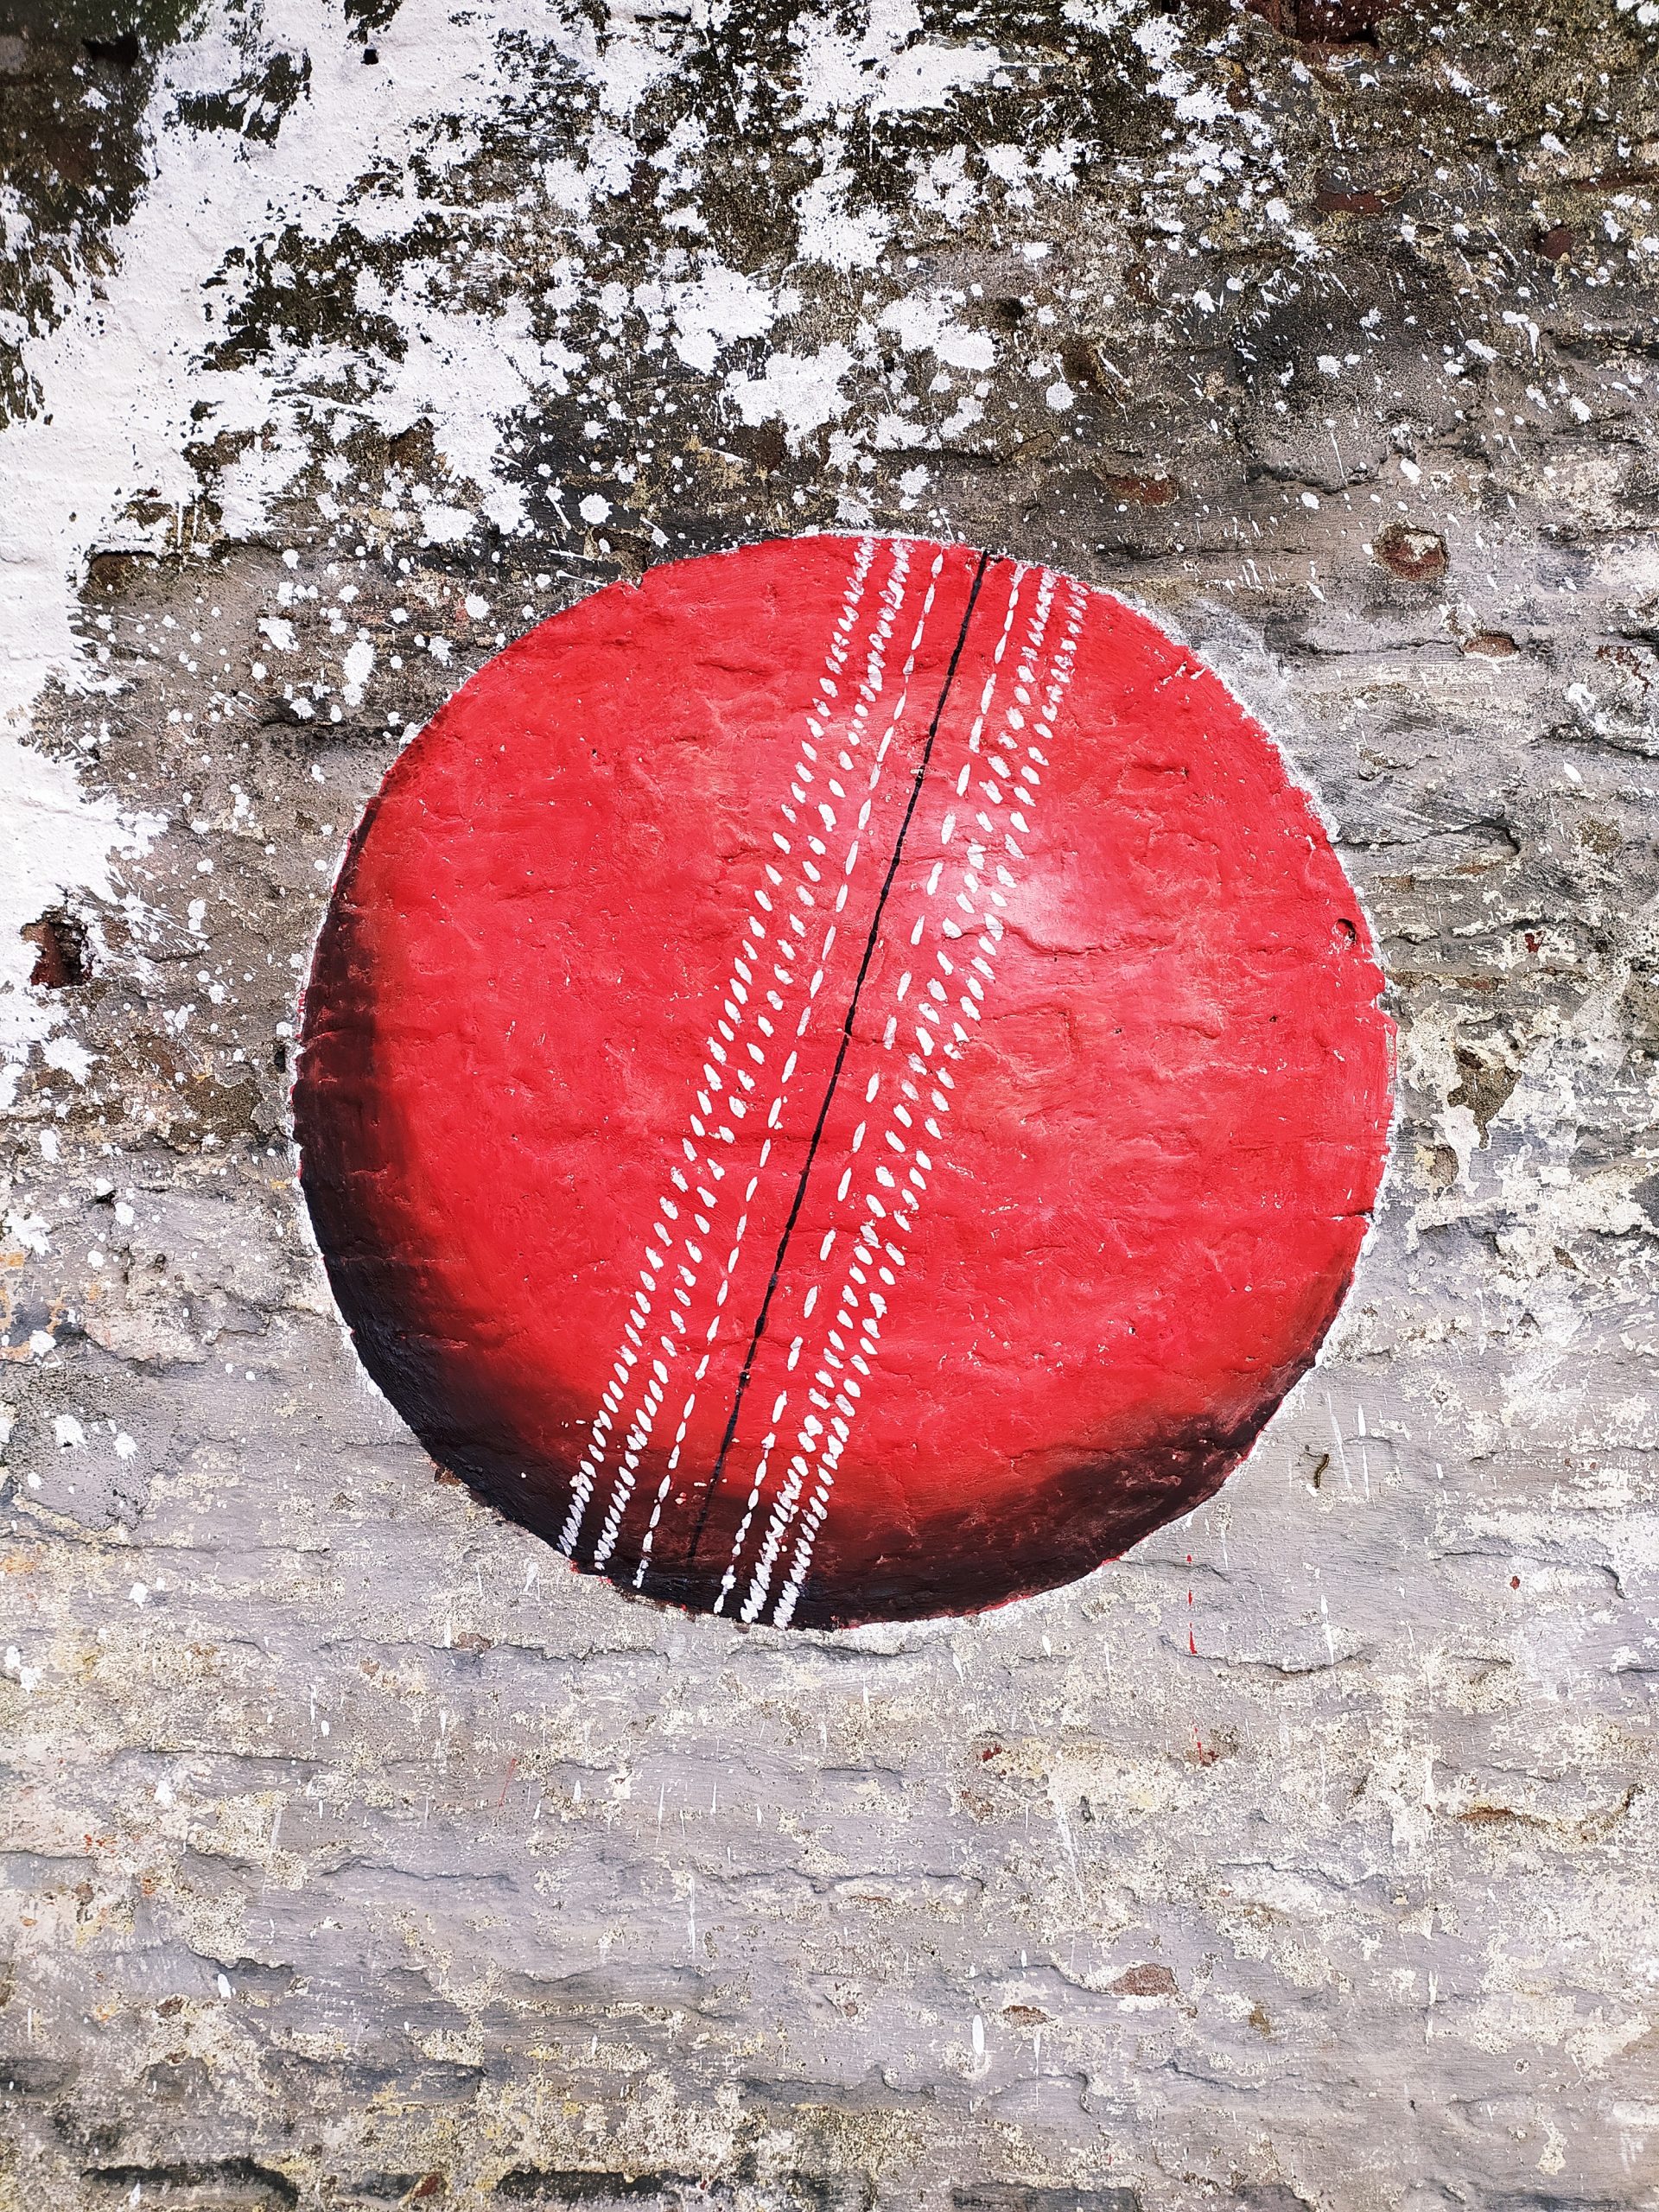 A cricket ball